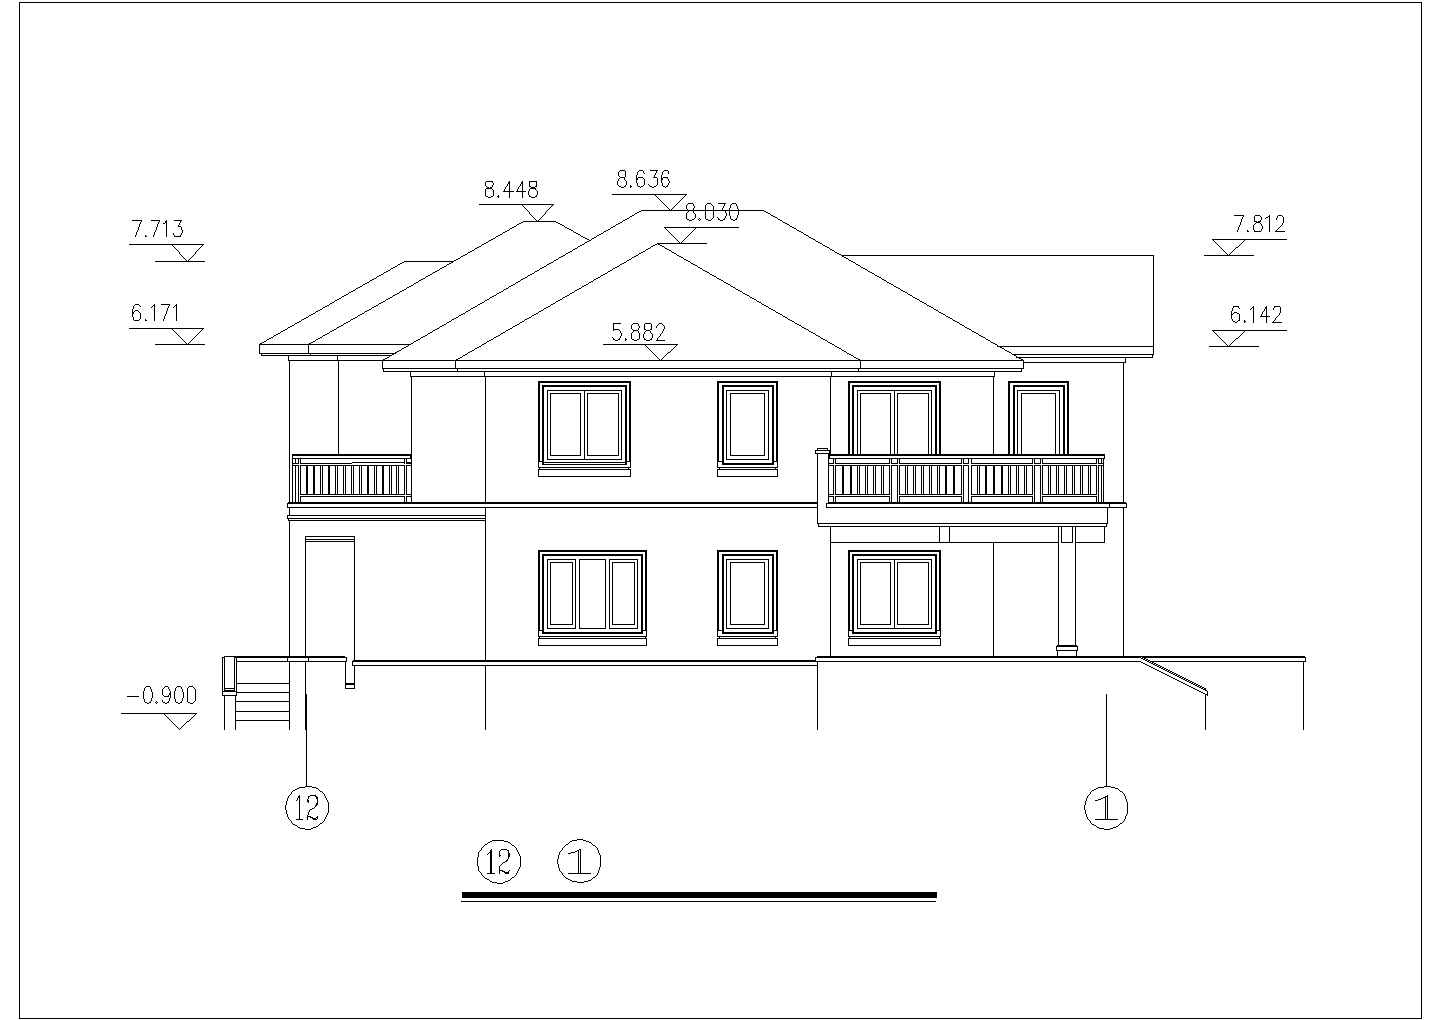 乐山市某村镇337平米2层砖混结构乡村民居楼建筑CAD设计图纸